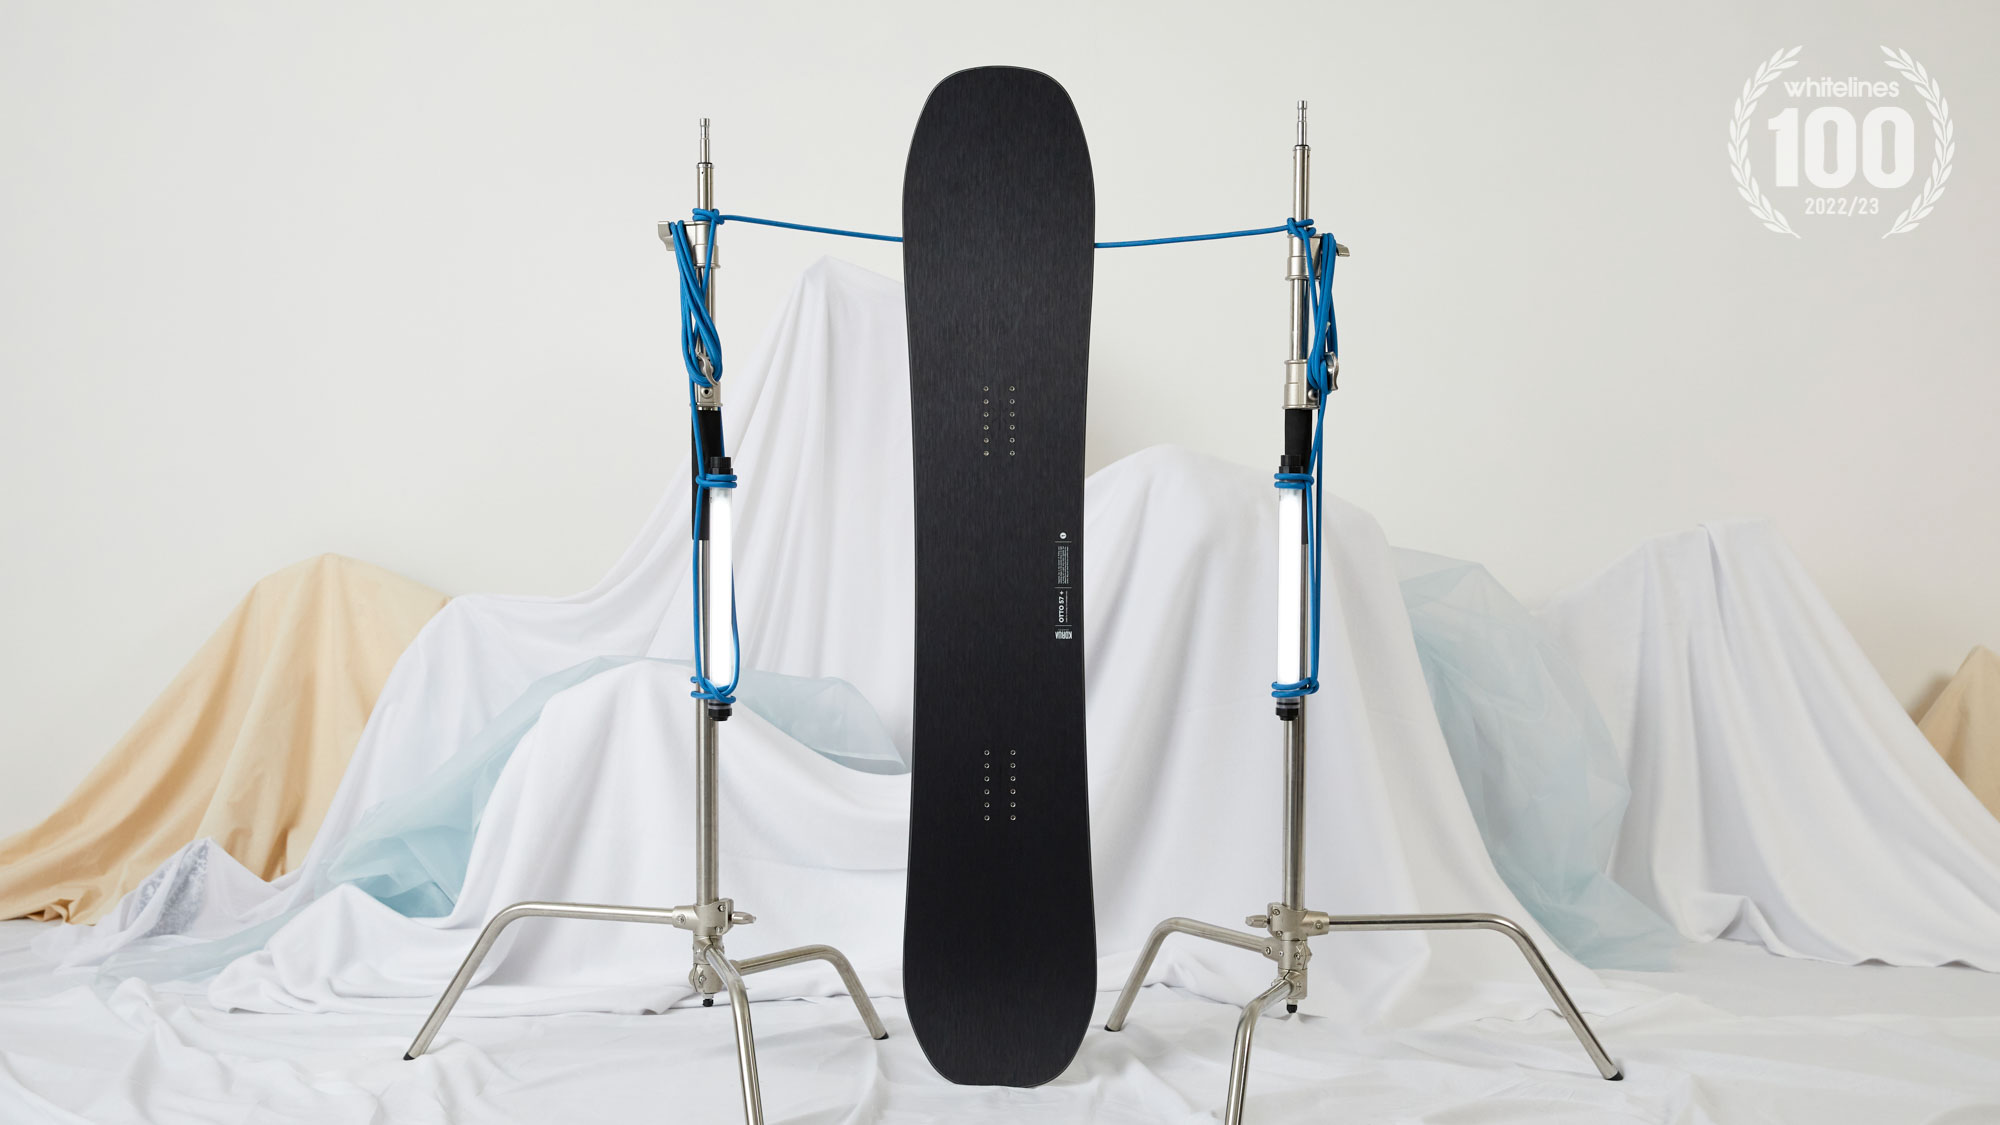 Korua Snowboards for 2023 – M I L O S P O R T